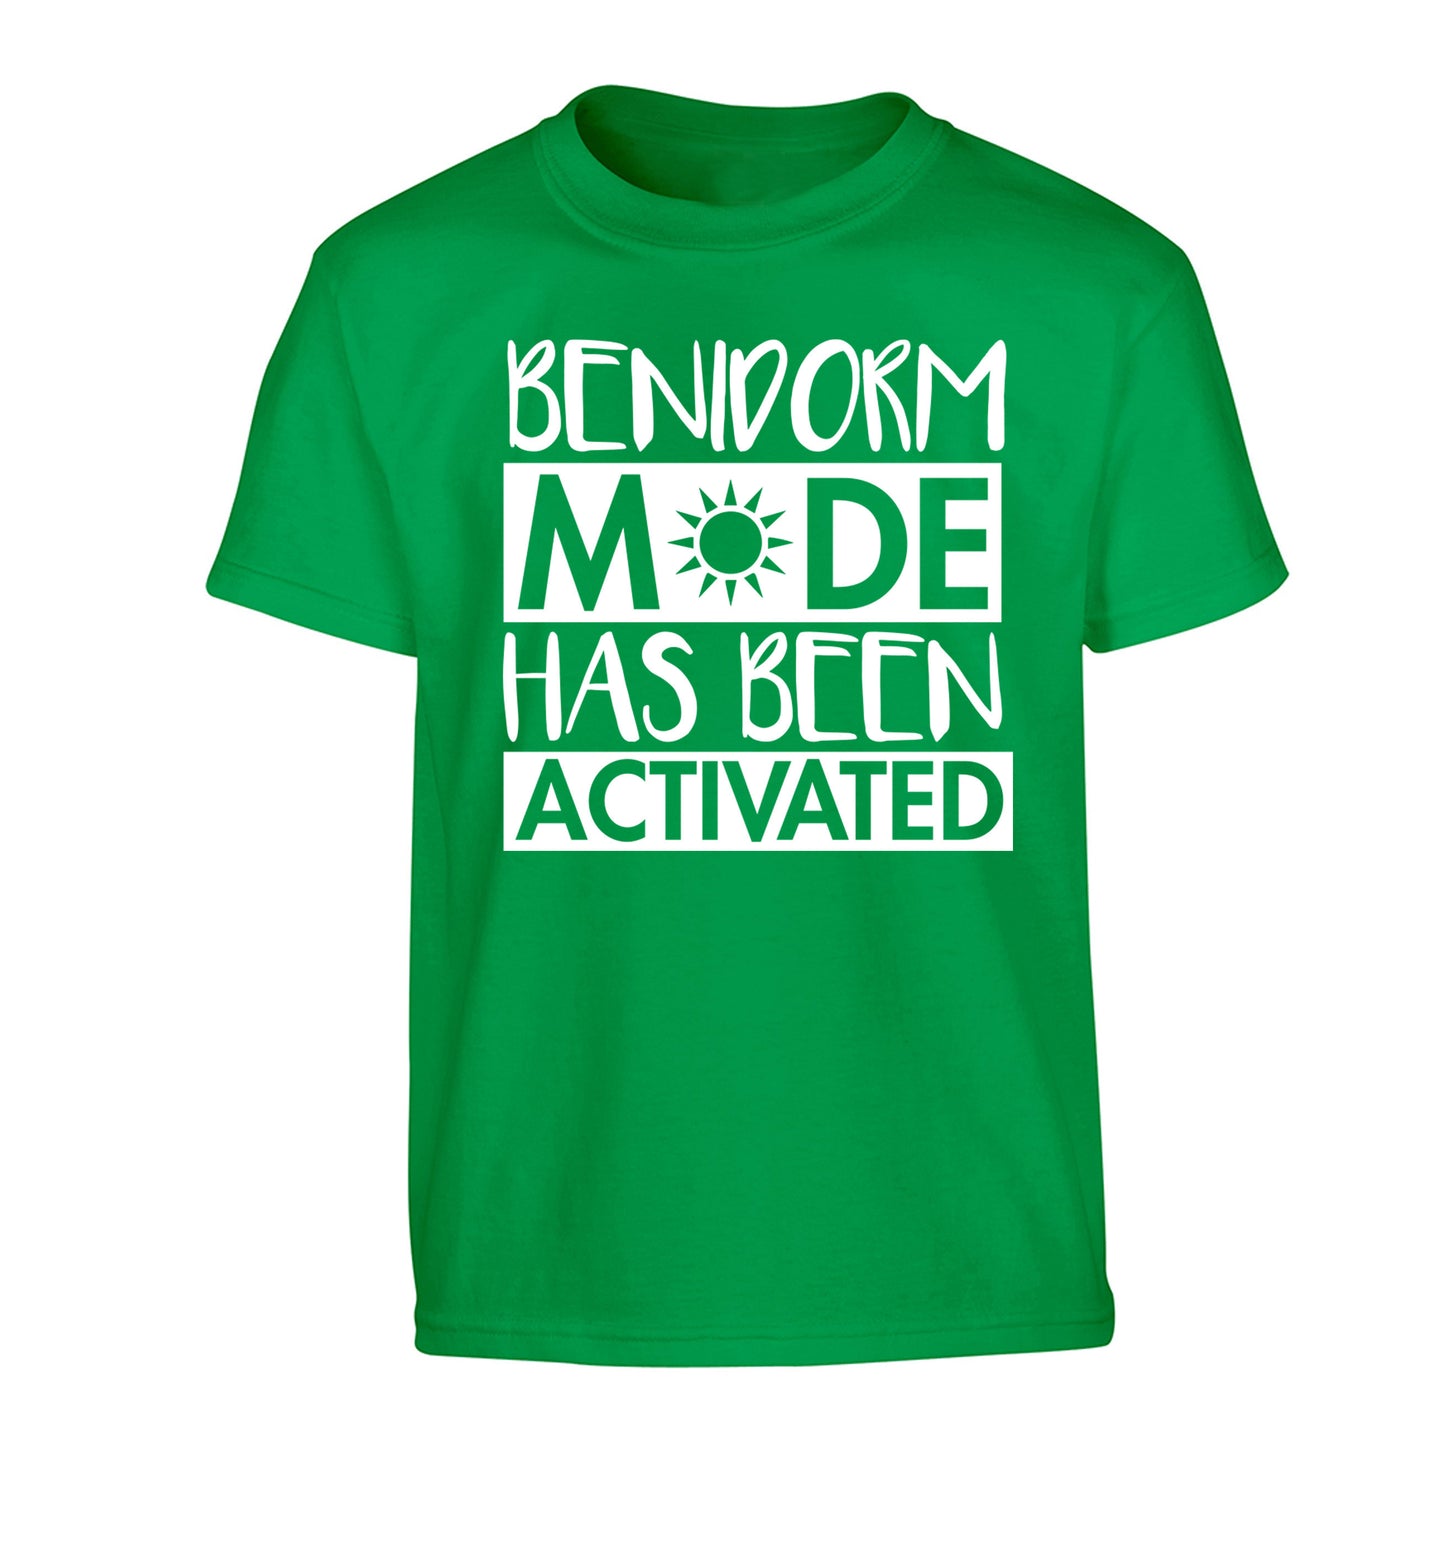 Benidorm mode has been activated Children's green Tshirt 12-14 Years